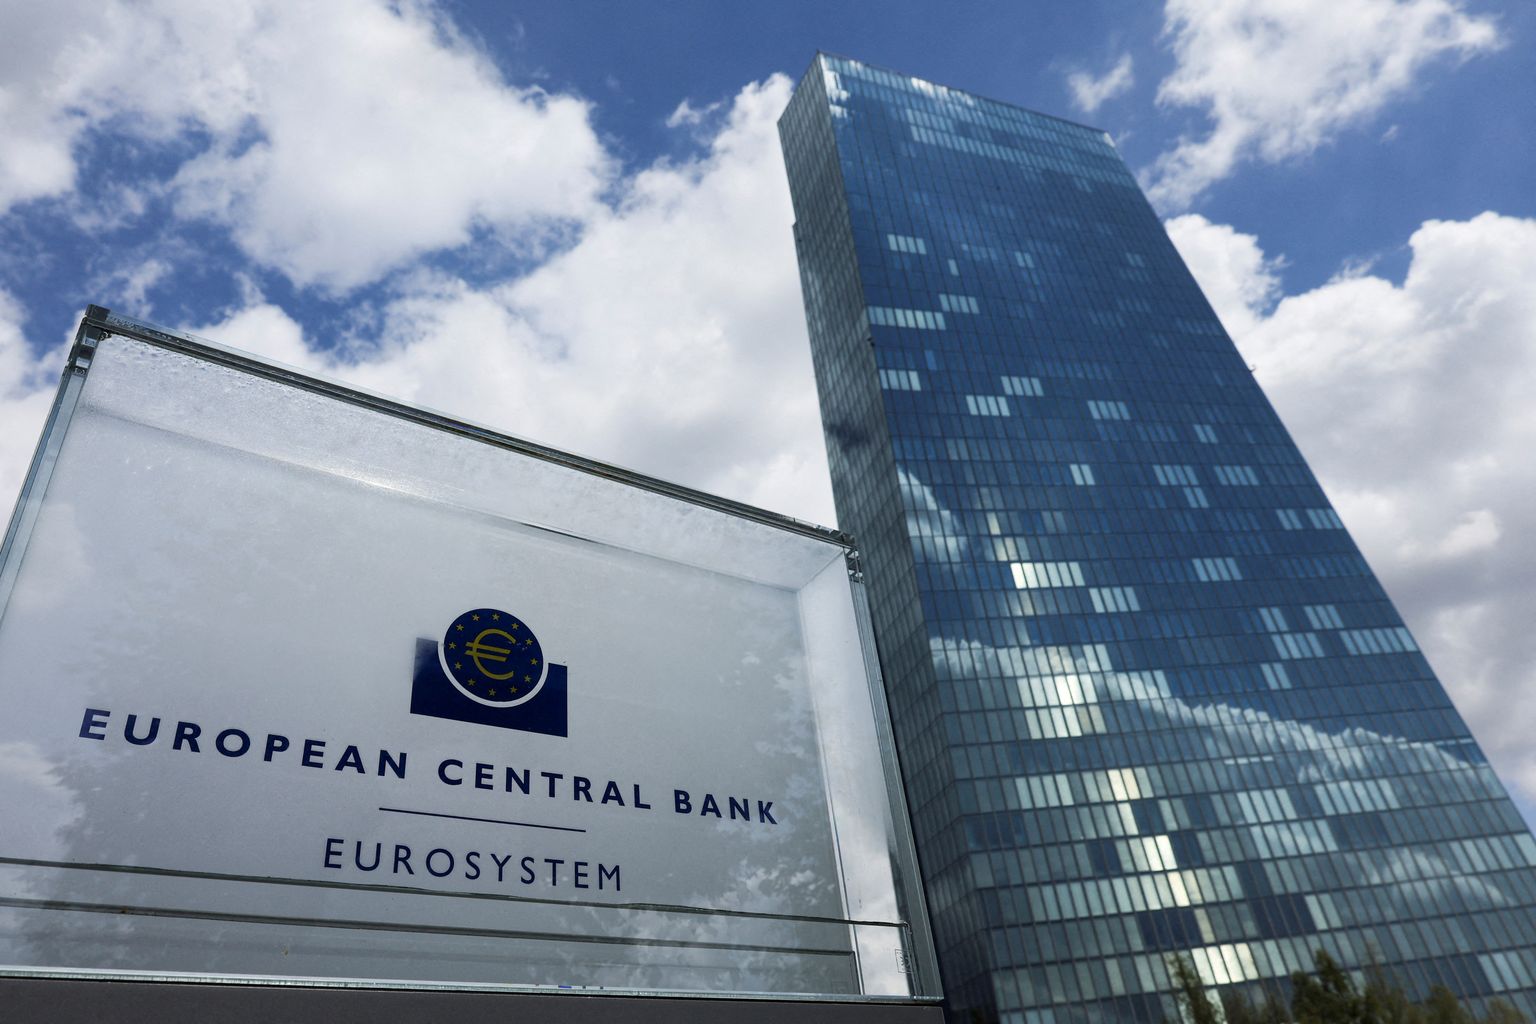 Euroopa Keskpank pole vana programmi raames ostnud kõigi maade võlakirju, vaid on läbi saanud tugevate võlakirjade raha kasutanud hädisemate riikide võlakirjade ostmiseks